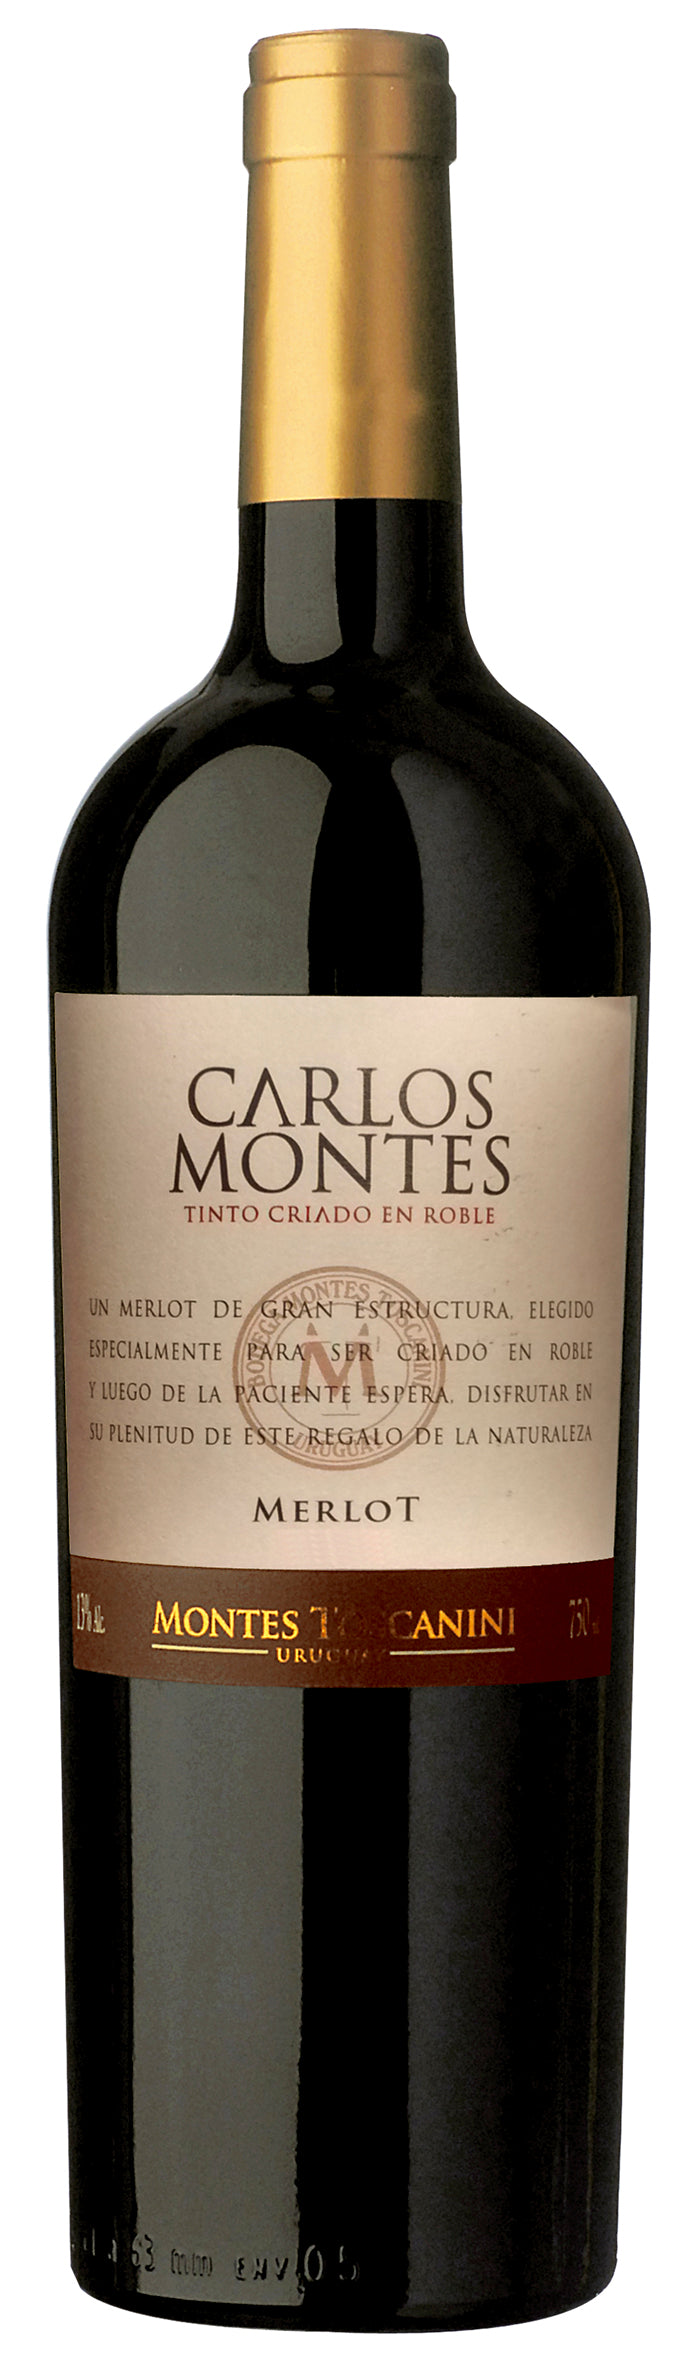 Vino tinto Montes Toscanini Carlos Montes Merlot 750 ml